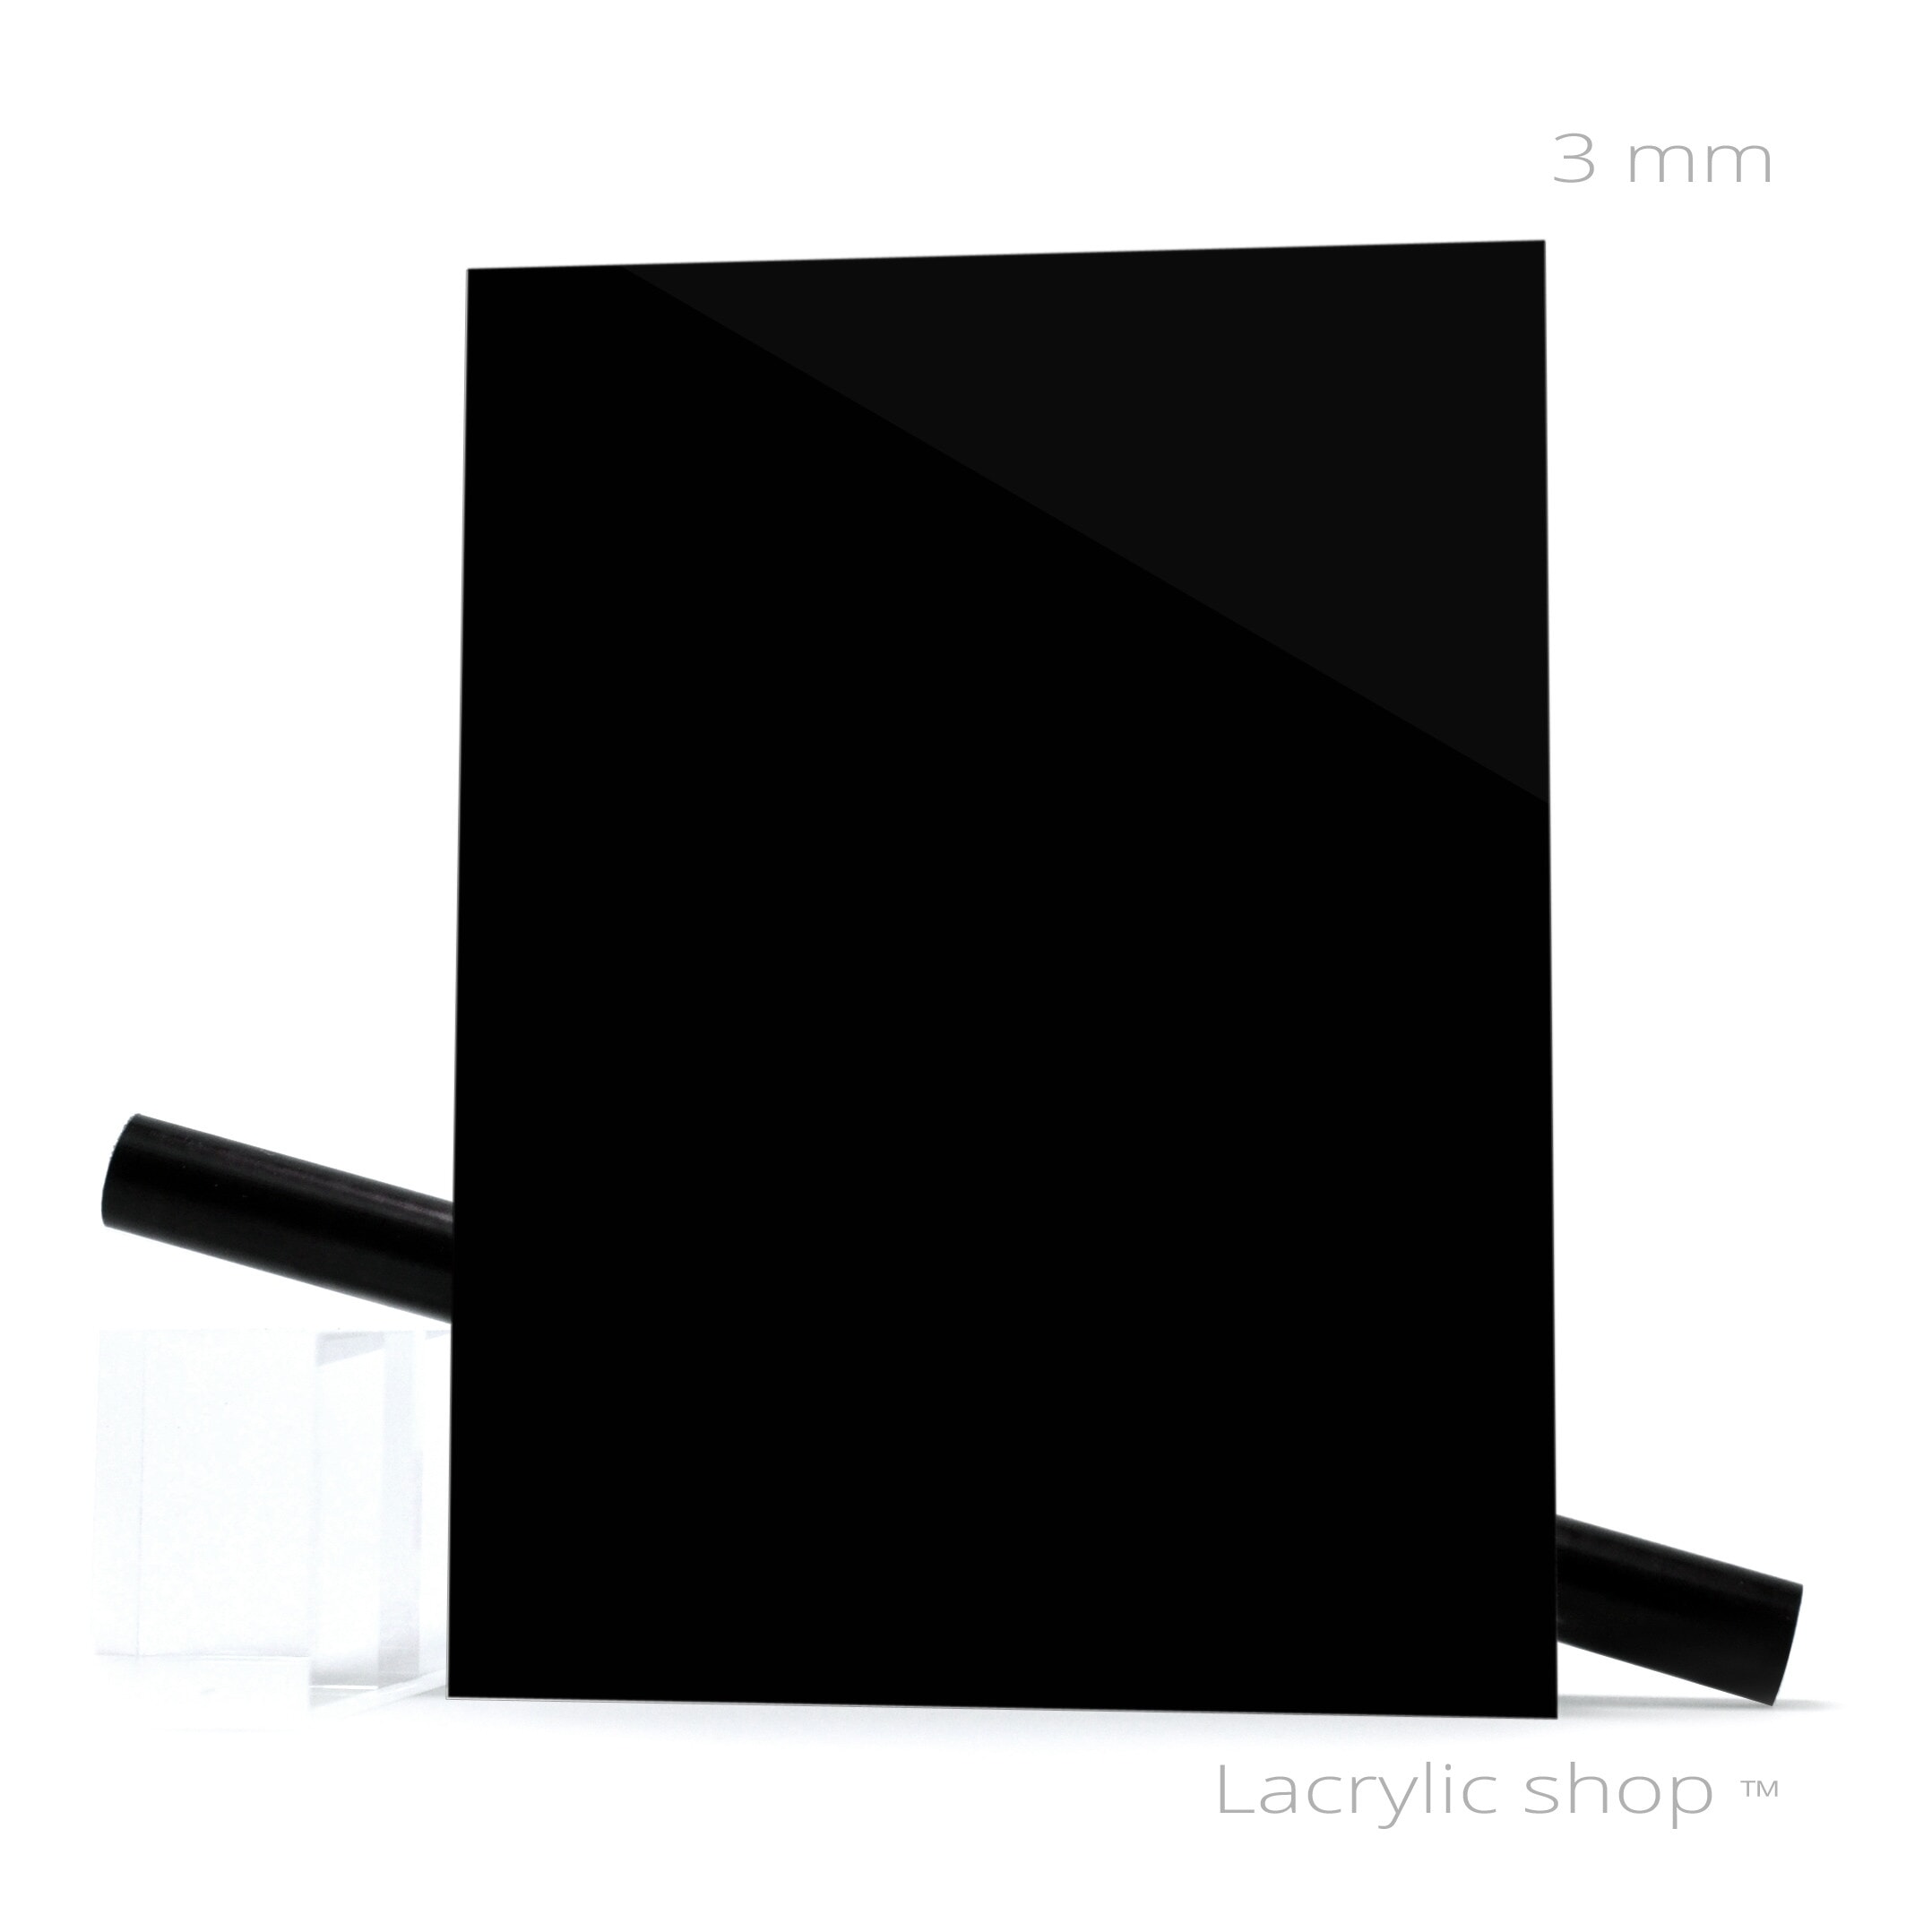 Plaque Plexiglass sur mesure Noir Brillant ep 3 au Meilleur Prix ! Découpe  Perspex 962 Altuglas 101-48000 Plexiglas 9H01